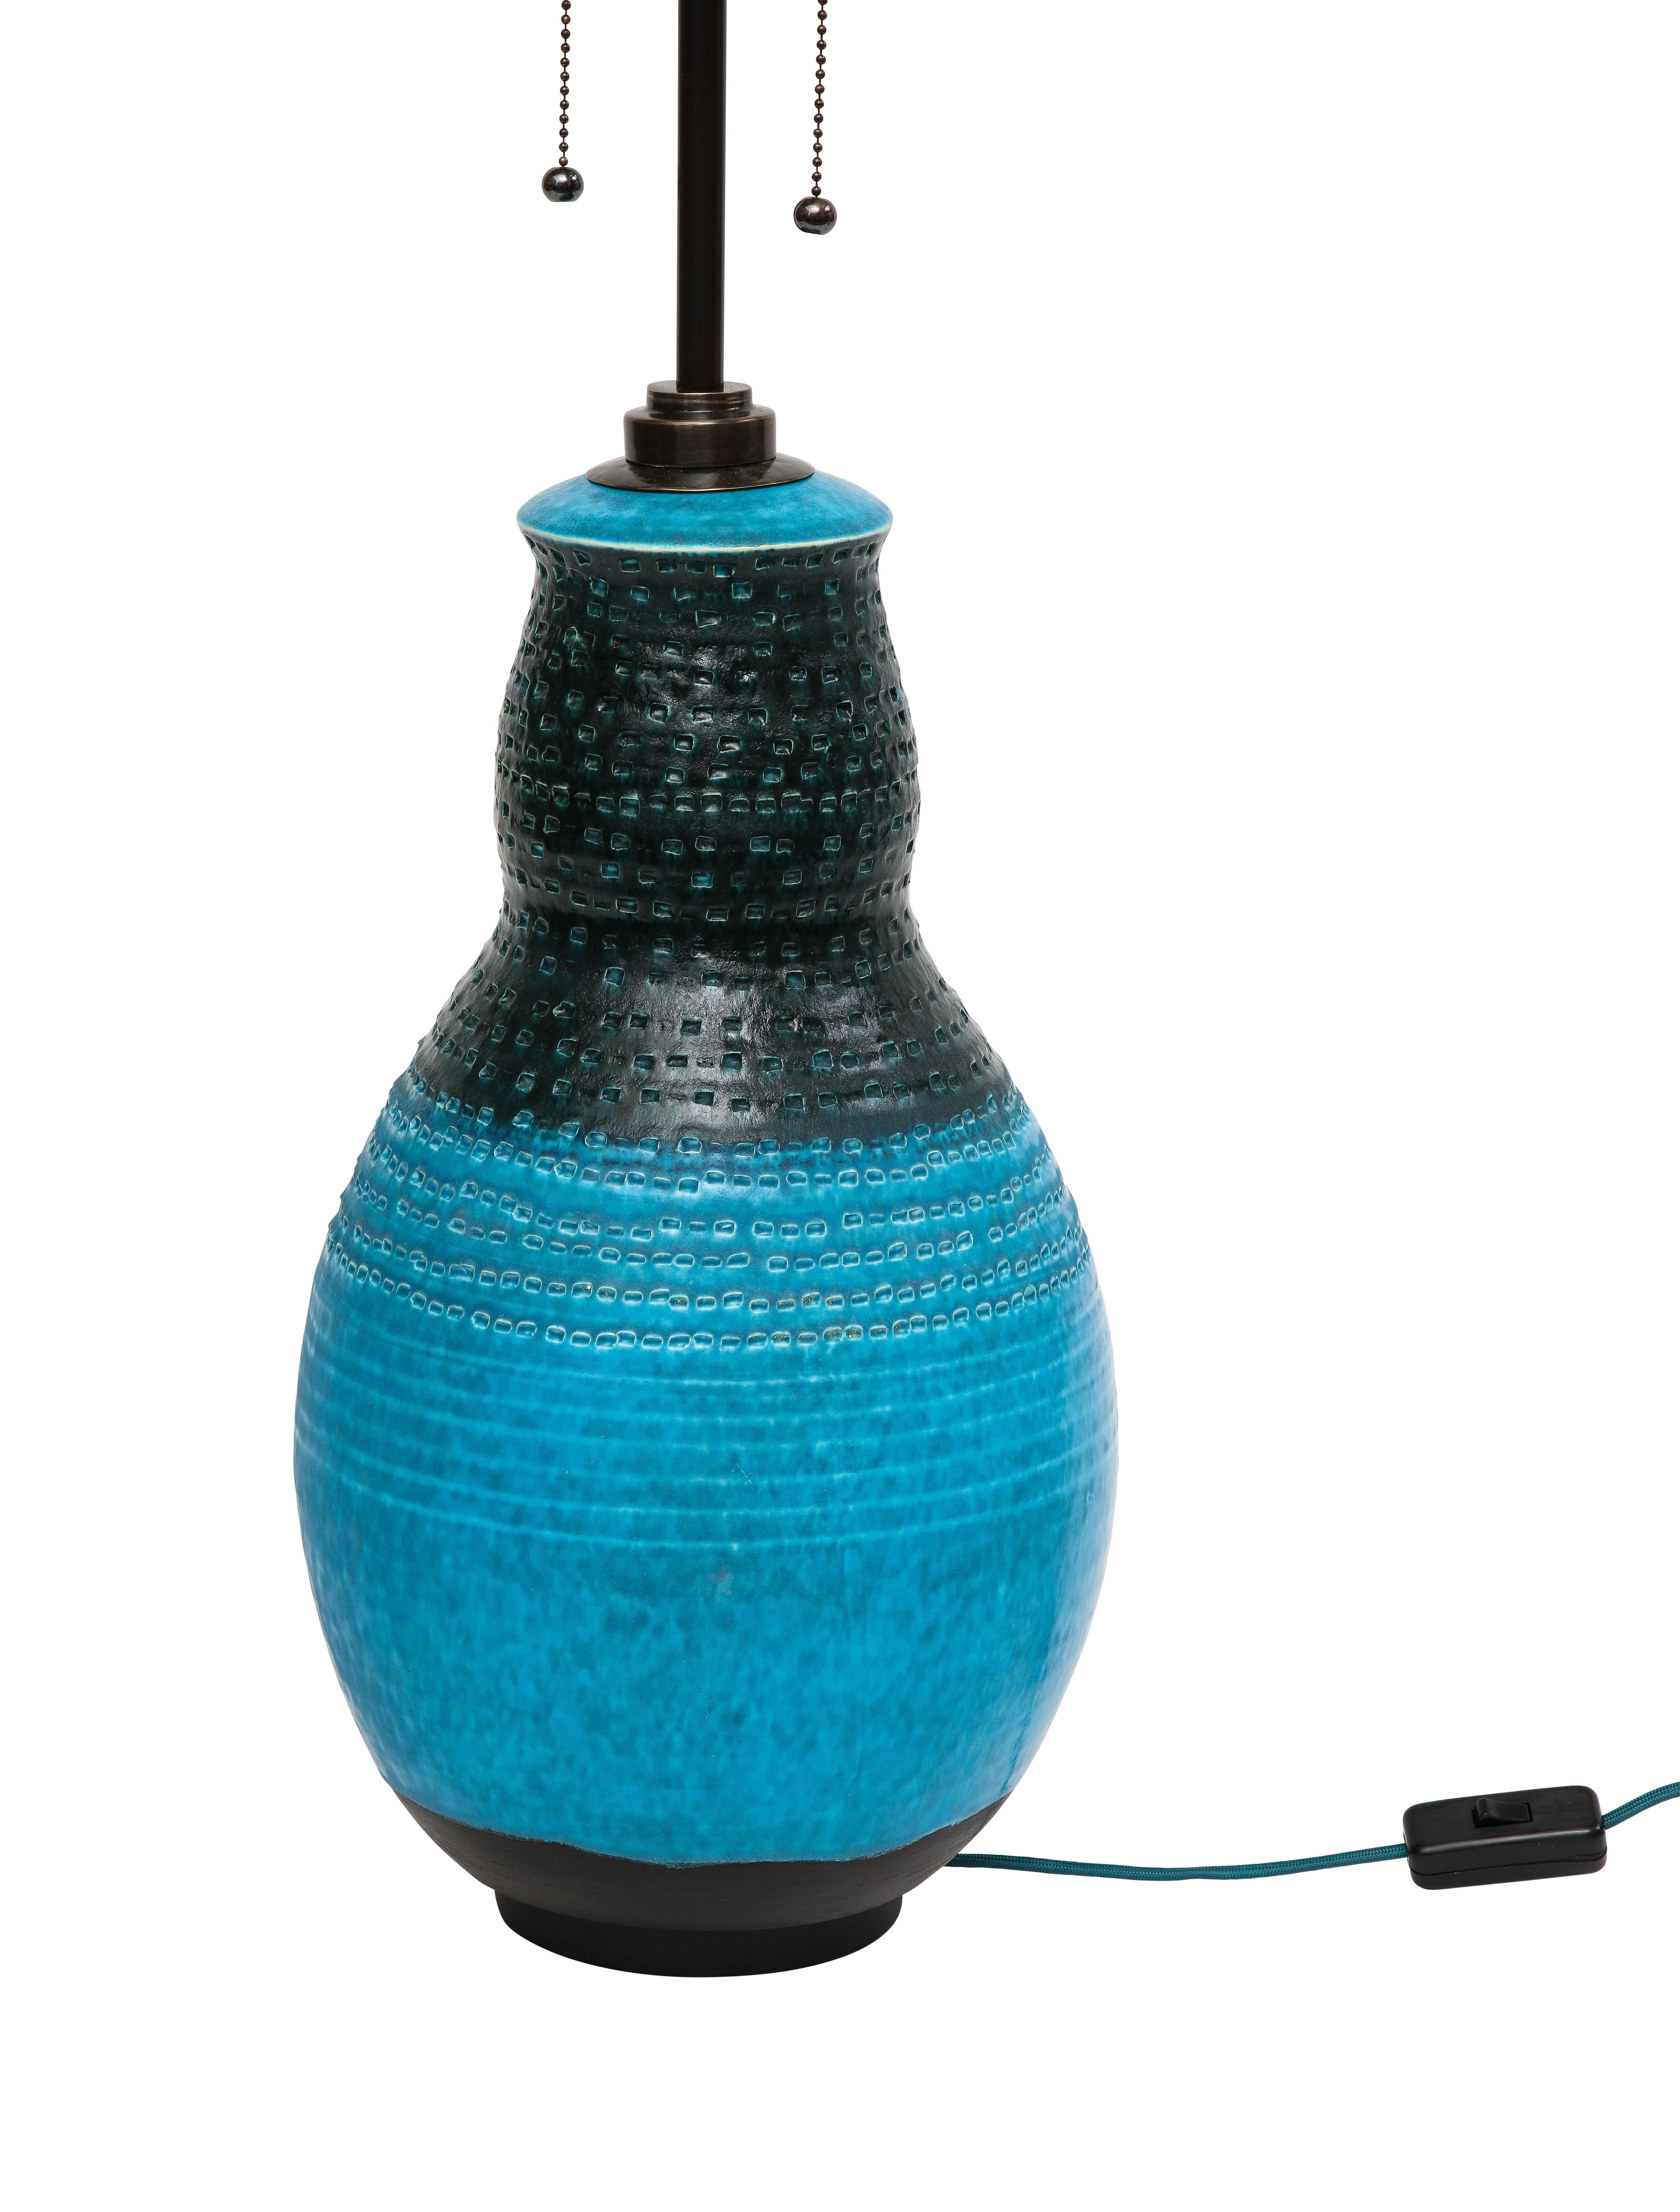 Alvino Bagni Table Lamp, Ceramic, Blue, Black, Impressed 1